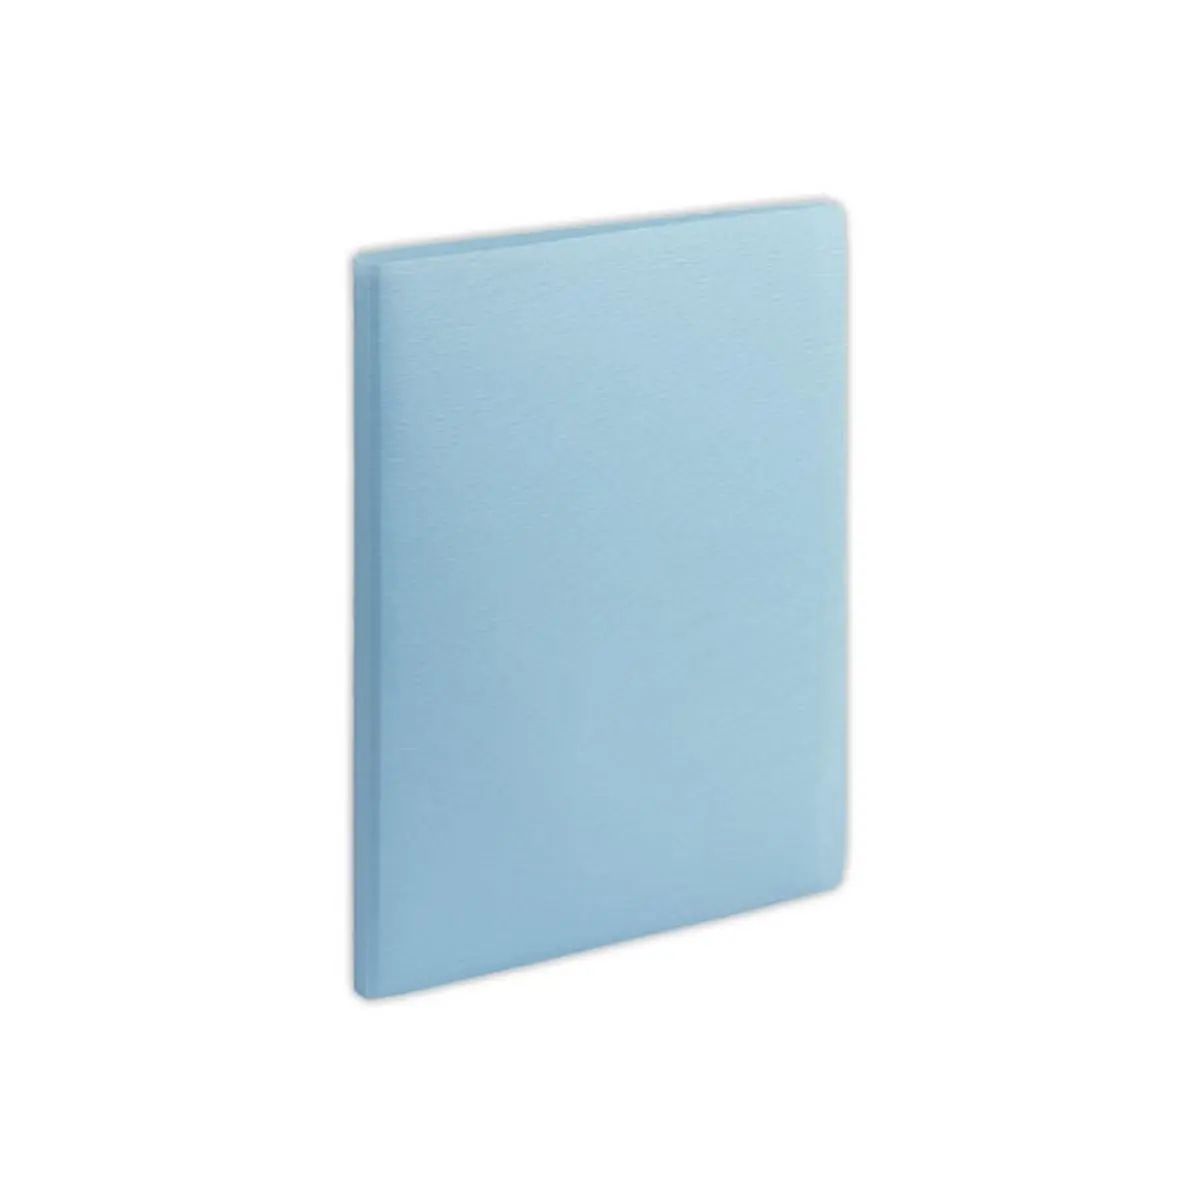 Protège-documents A4 - 100 poches - Bleu clair - FIDUCIAL photo du produit